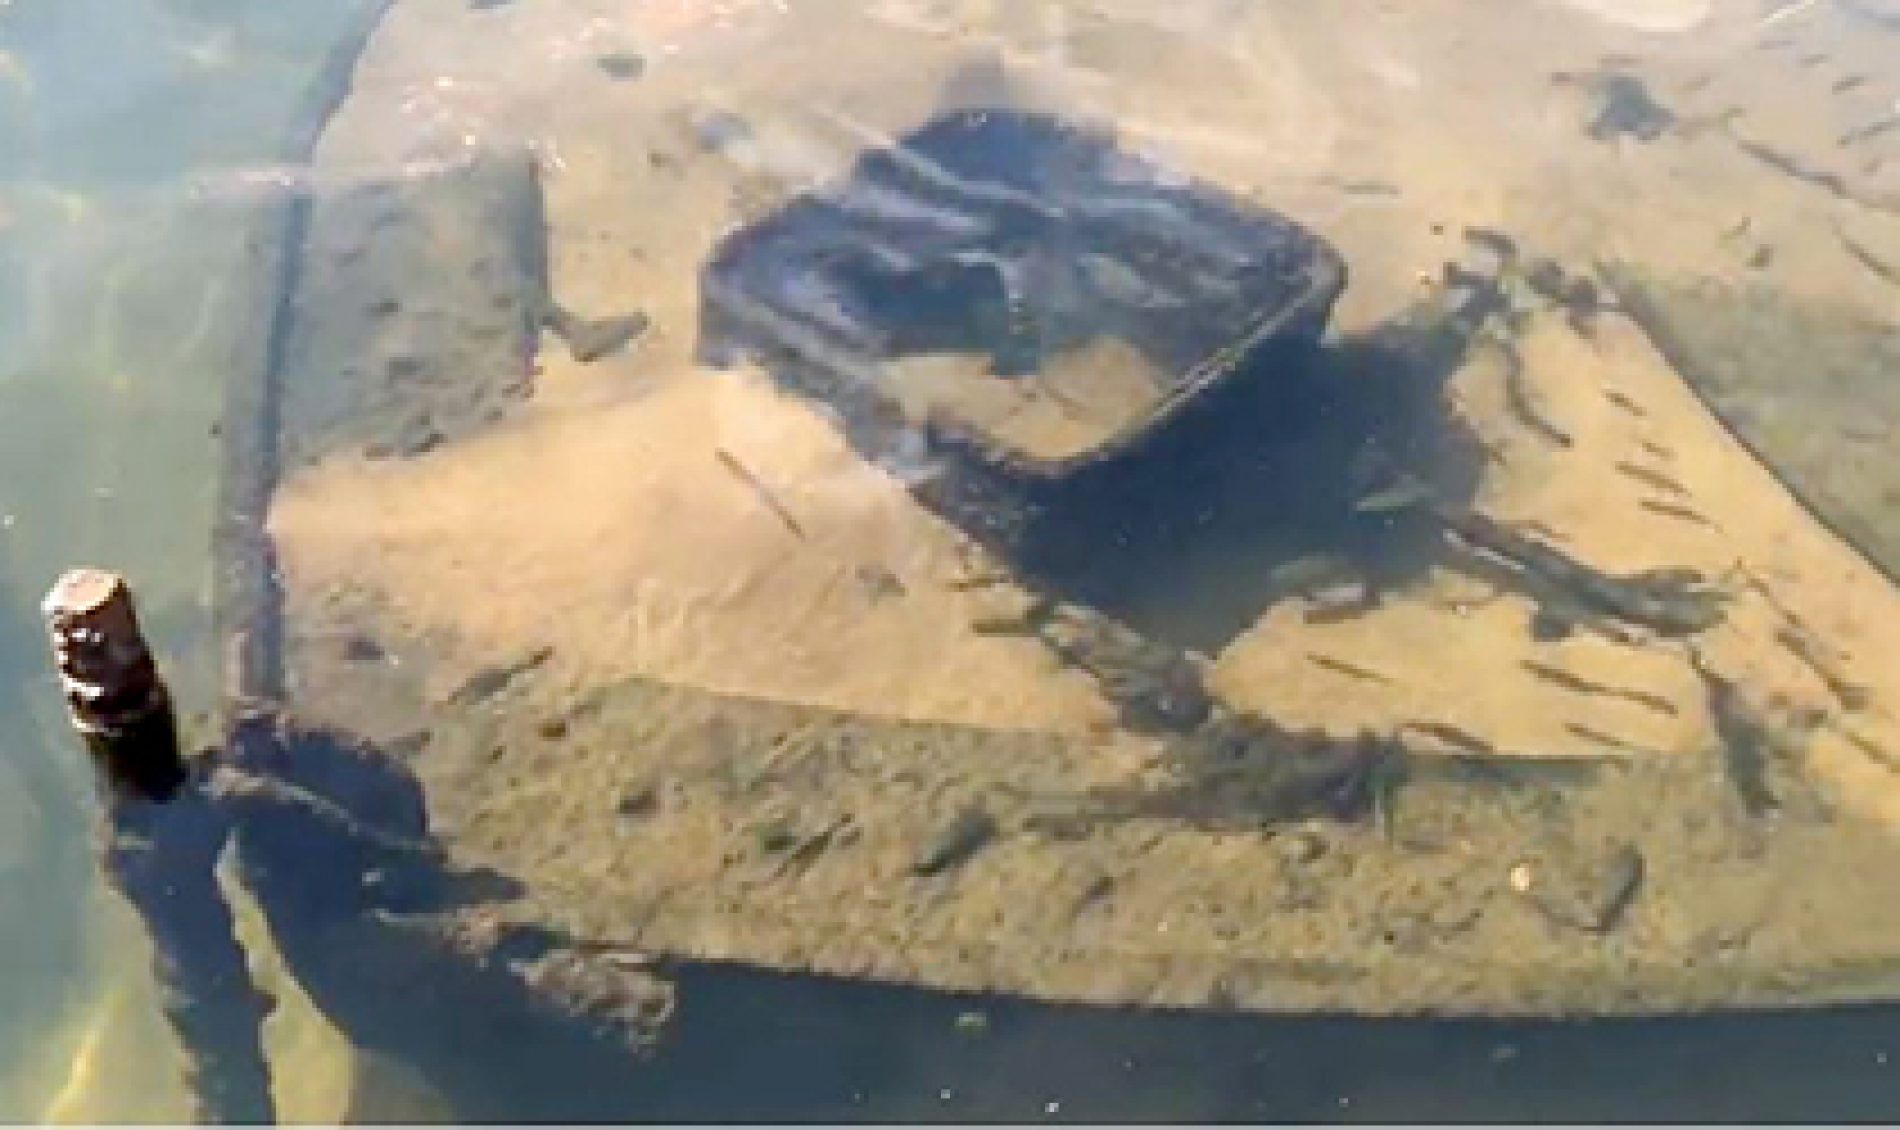 COLÔMBIA: Barco naufragado há 70 anos reaparece no Rio Grande